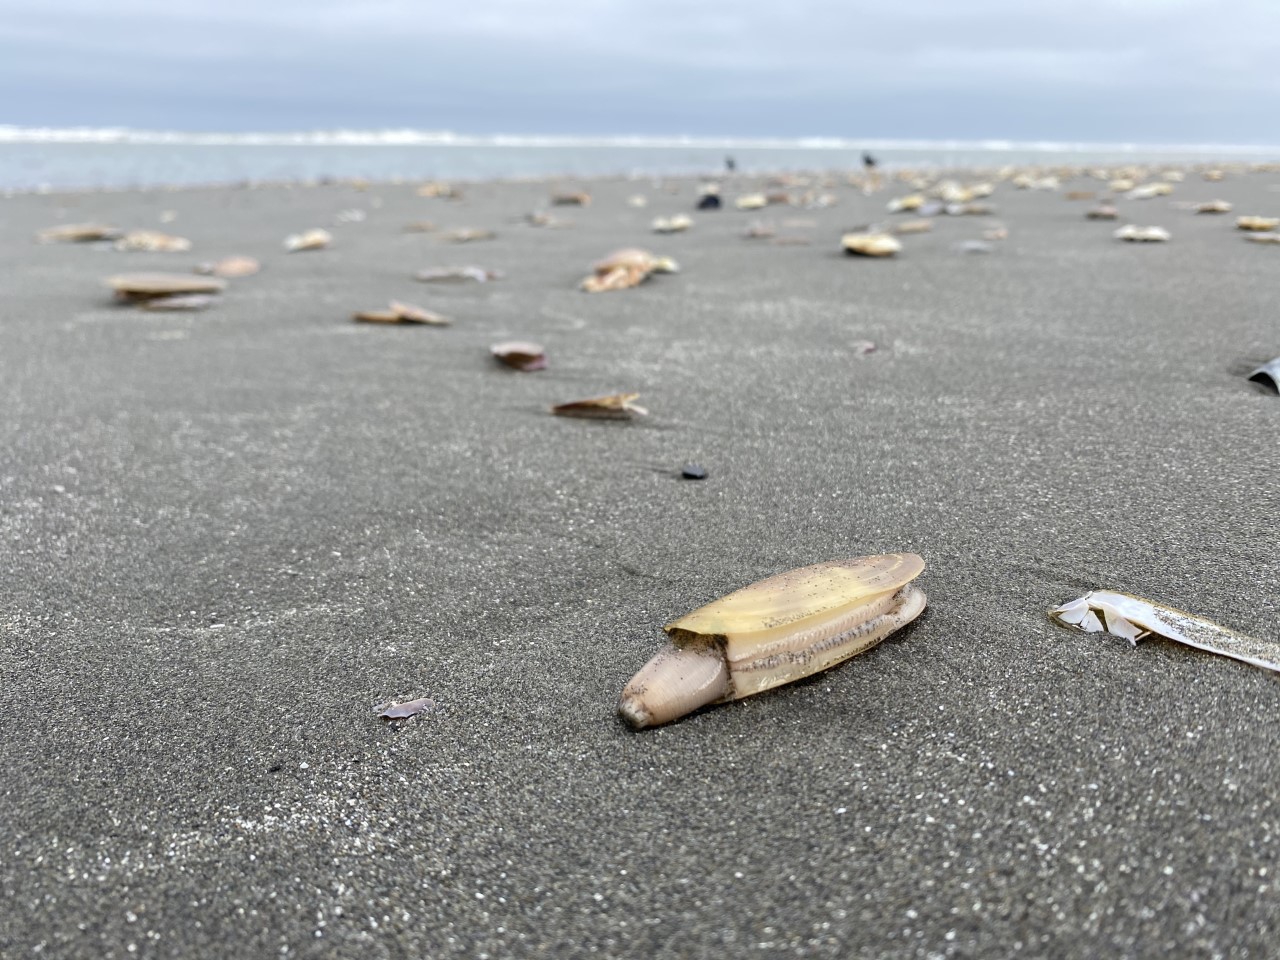 Many razor clams lie exposed on a sandy beach.